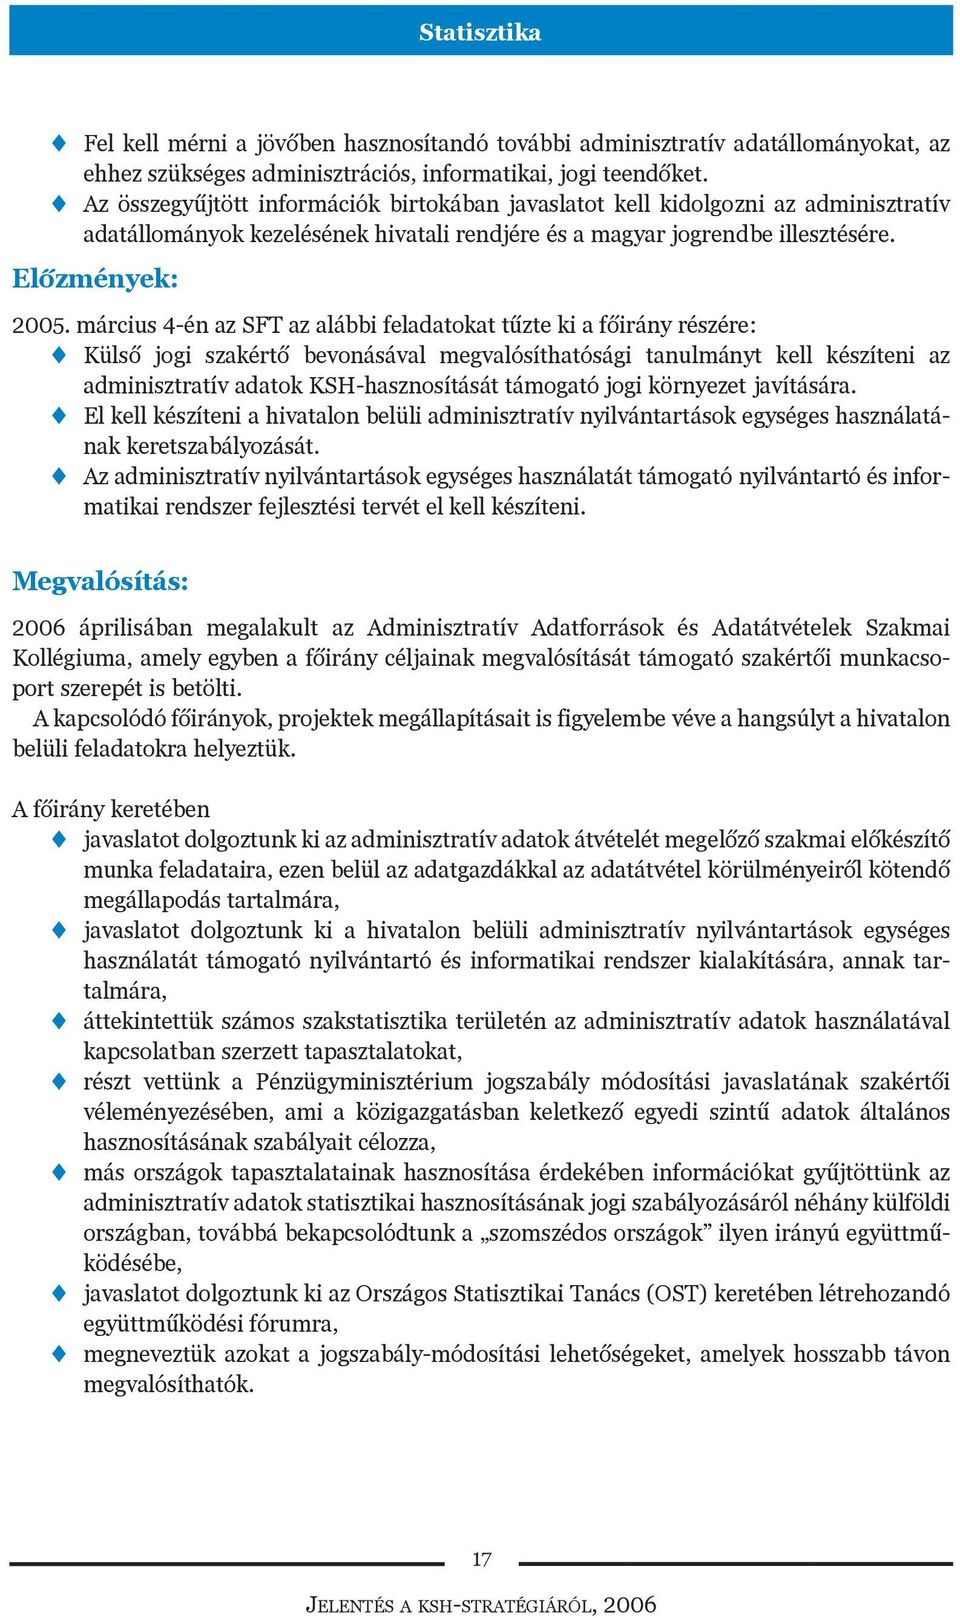 március 4-én az SFT az alábbi feladatokat tûzte ki a fõirány részére: Külsõ jogi szakértõ bevonásával megvalósíthatósági tanulmányt kell készíteni az adminisztratív adatok KSH-hasznosítását támogató